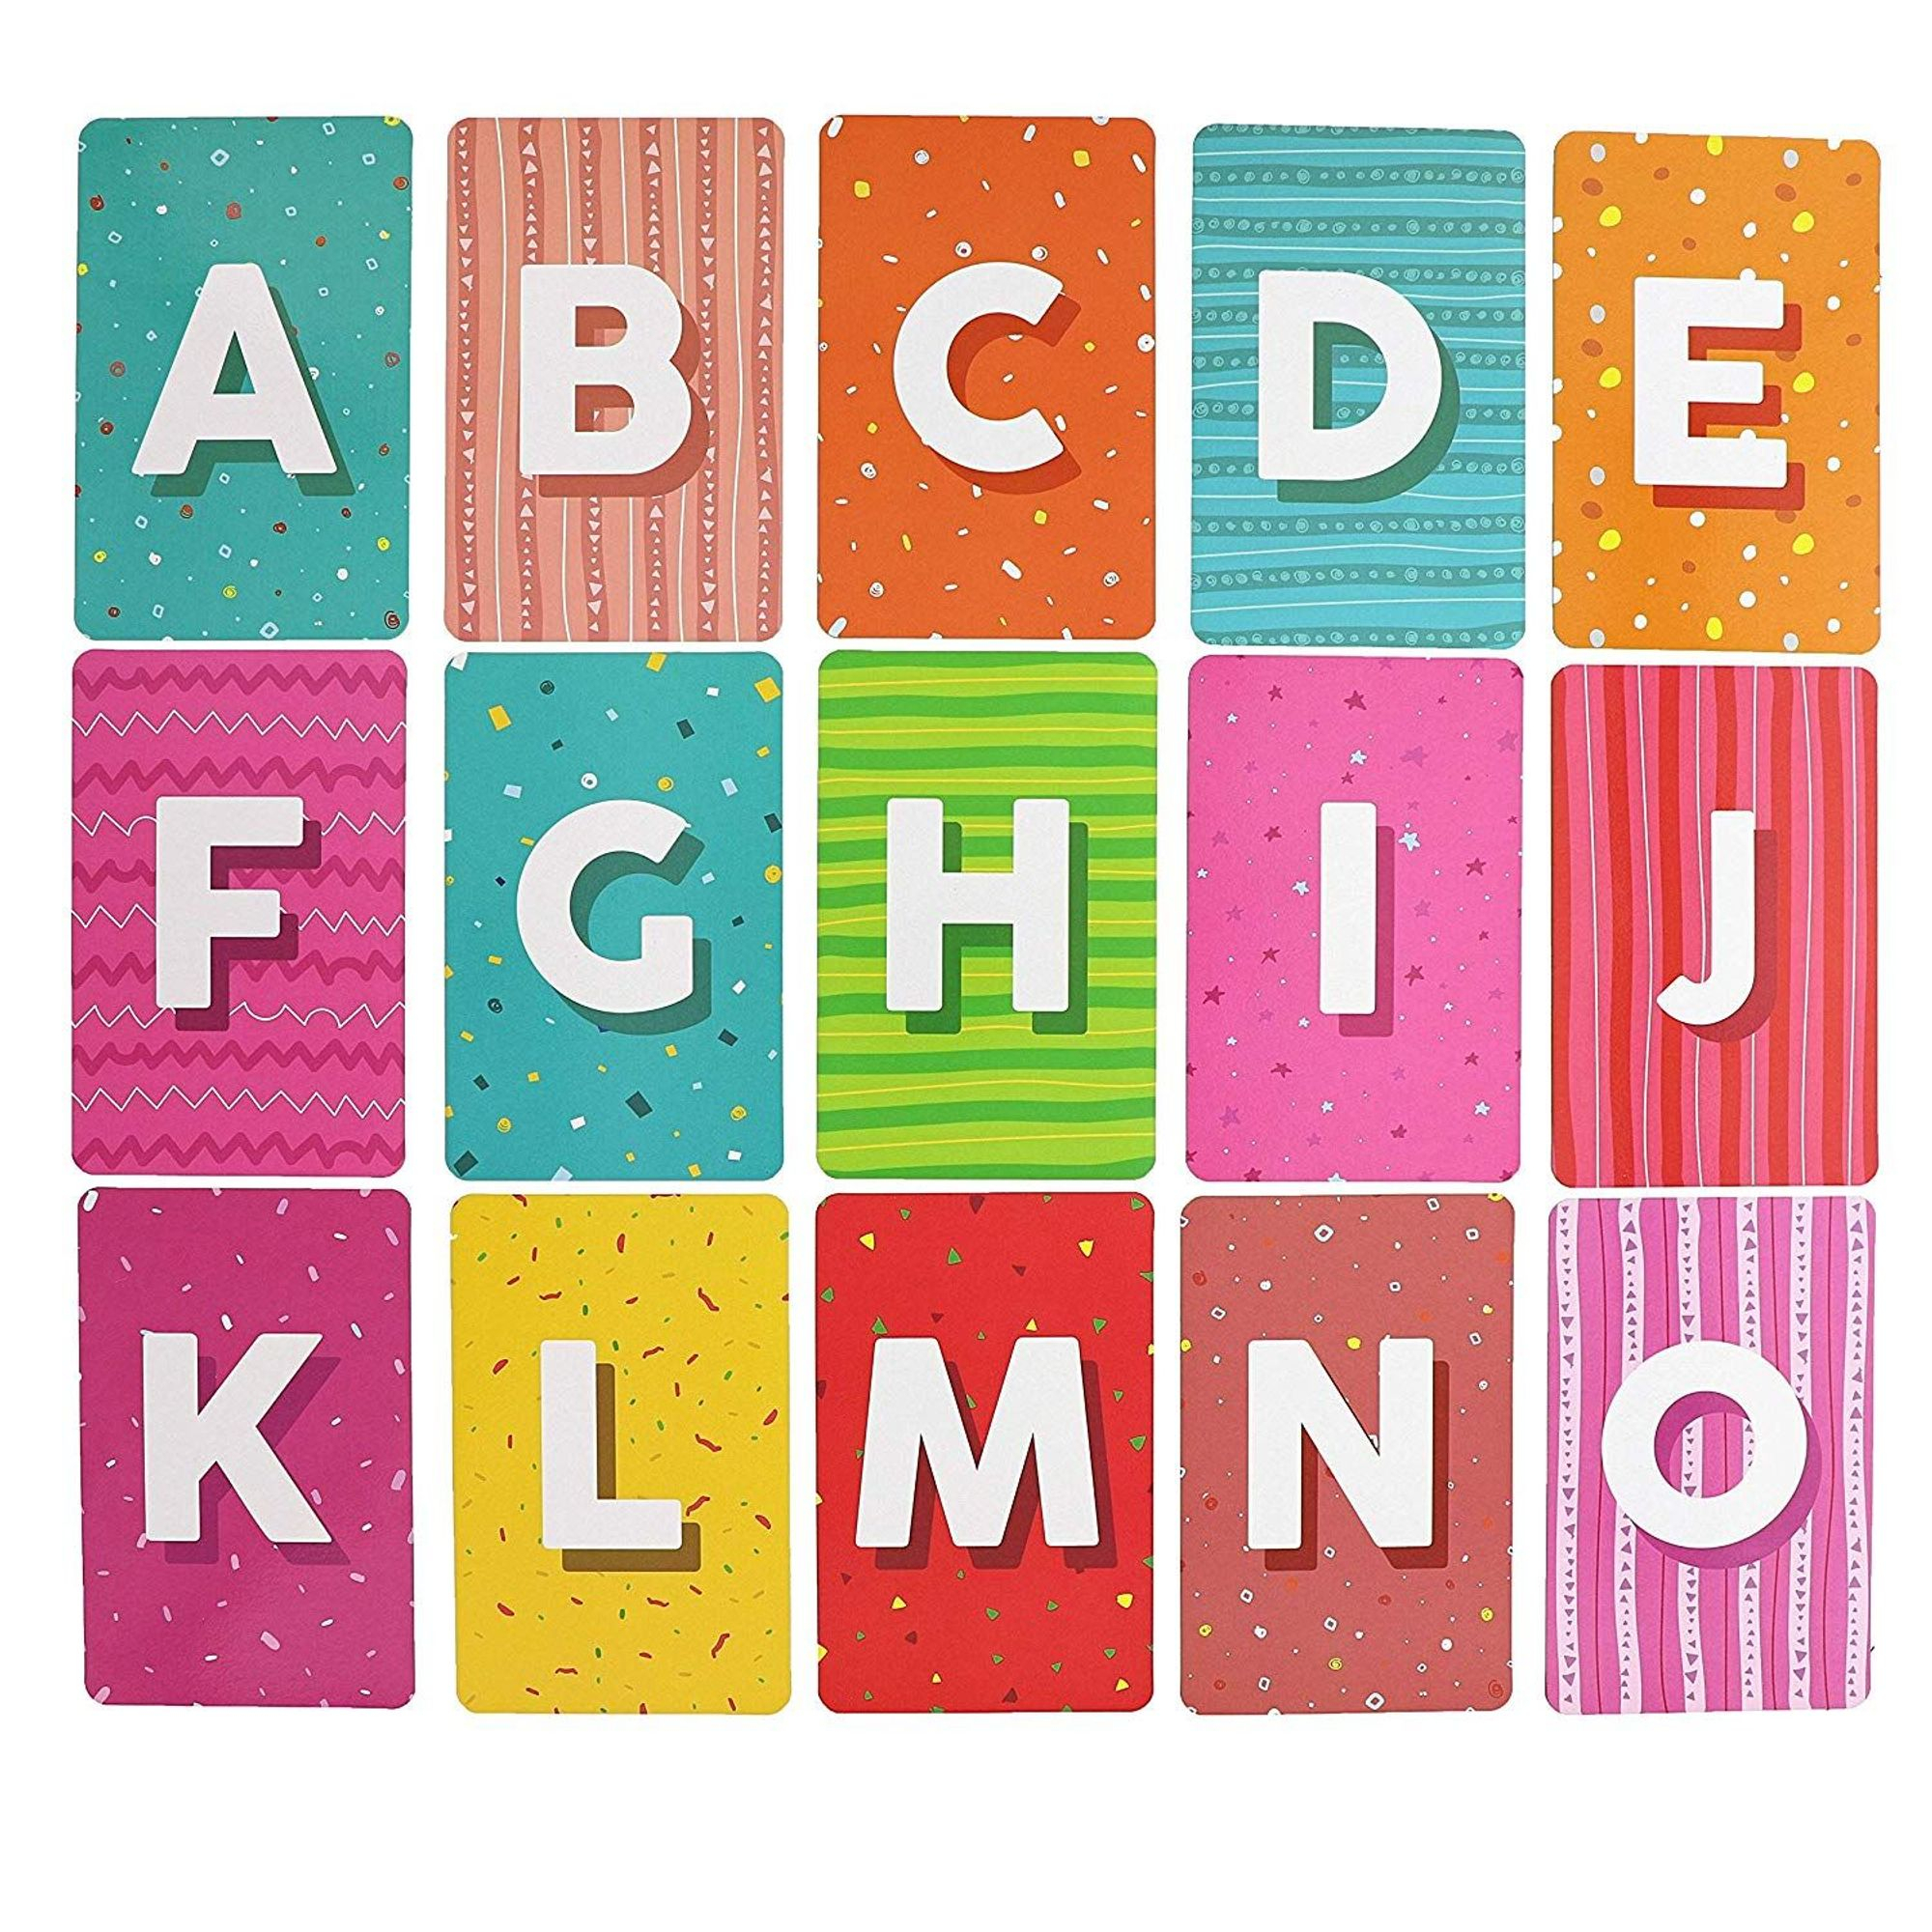 26 Count Magnetic Alphabet Letters Flash Cards, Large pour 3 Alphabet